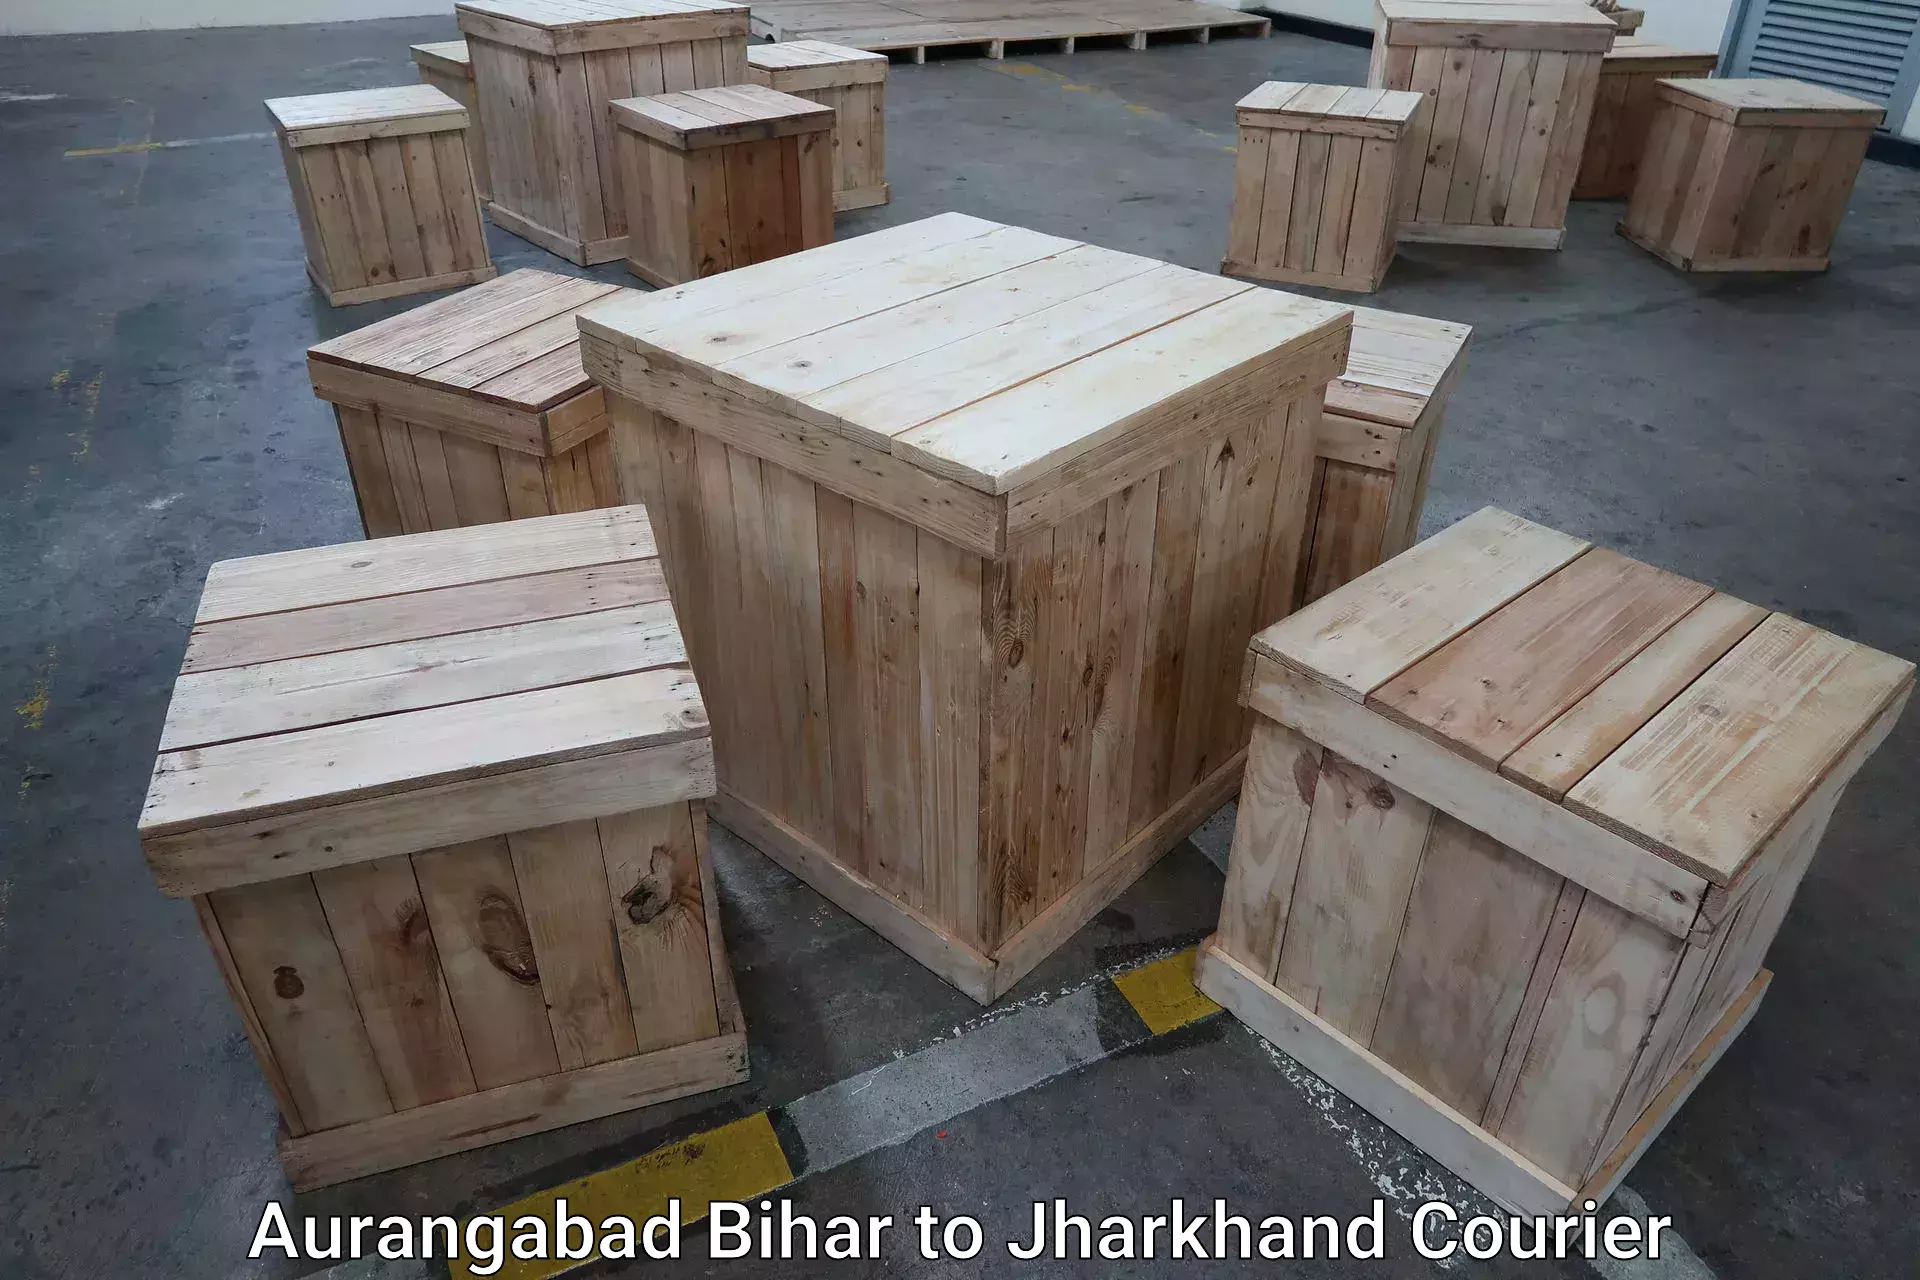 Luggage delivery estimate in Aurangabad Bihar to IIIT Ranchi